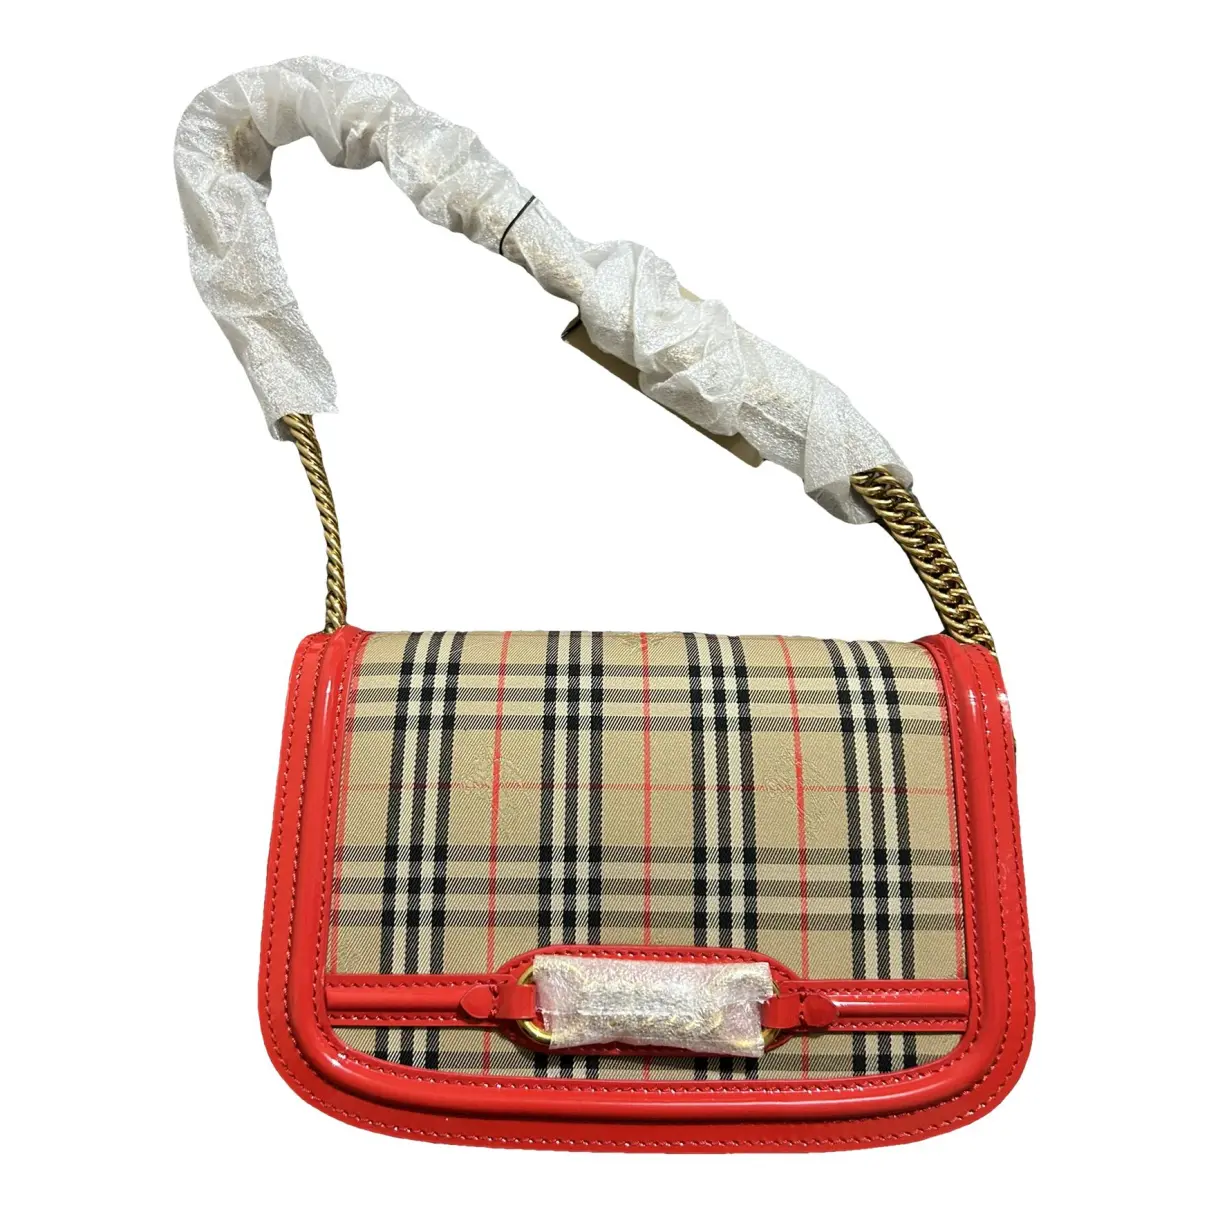 The Link cloth handbag